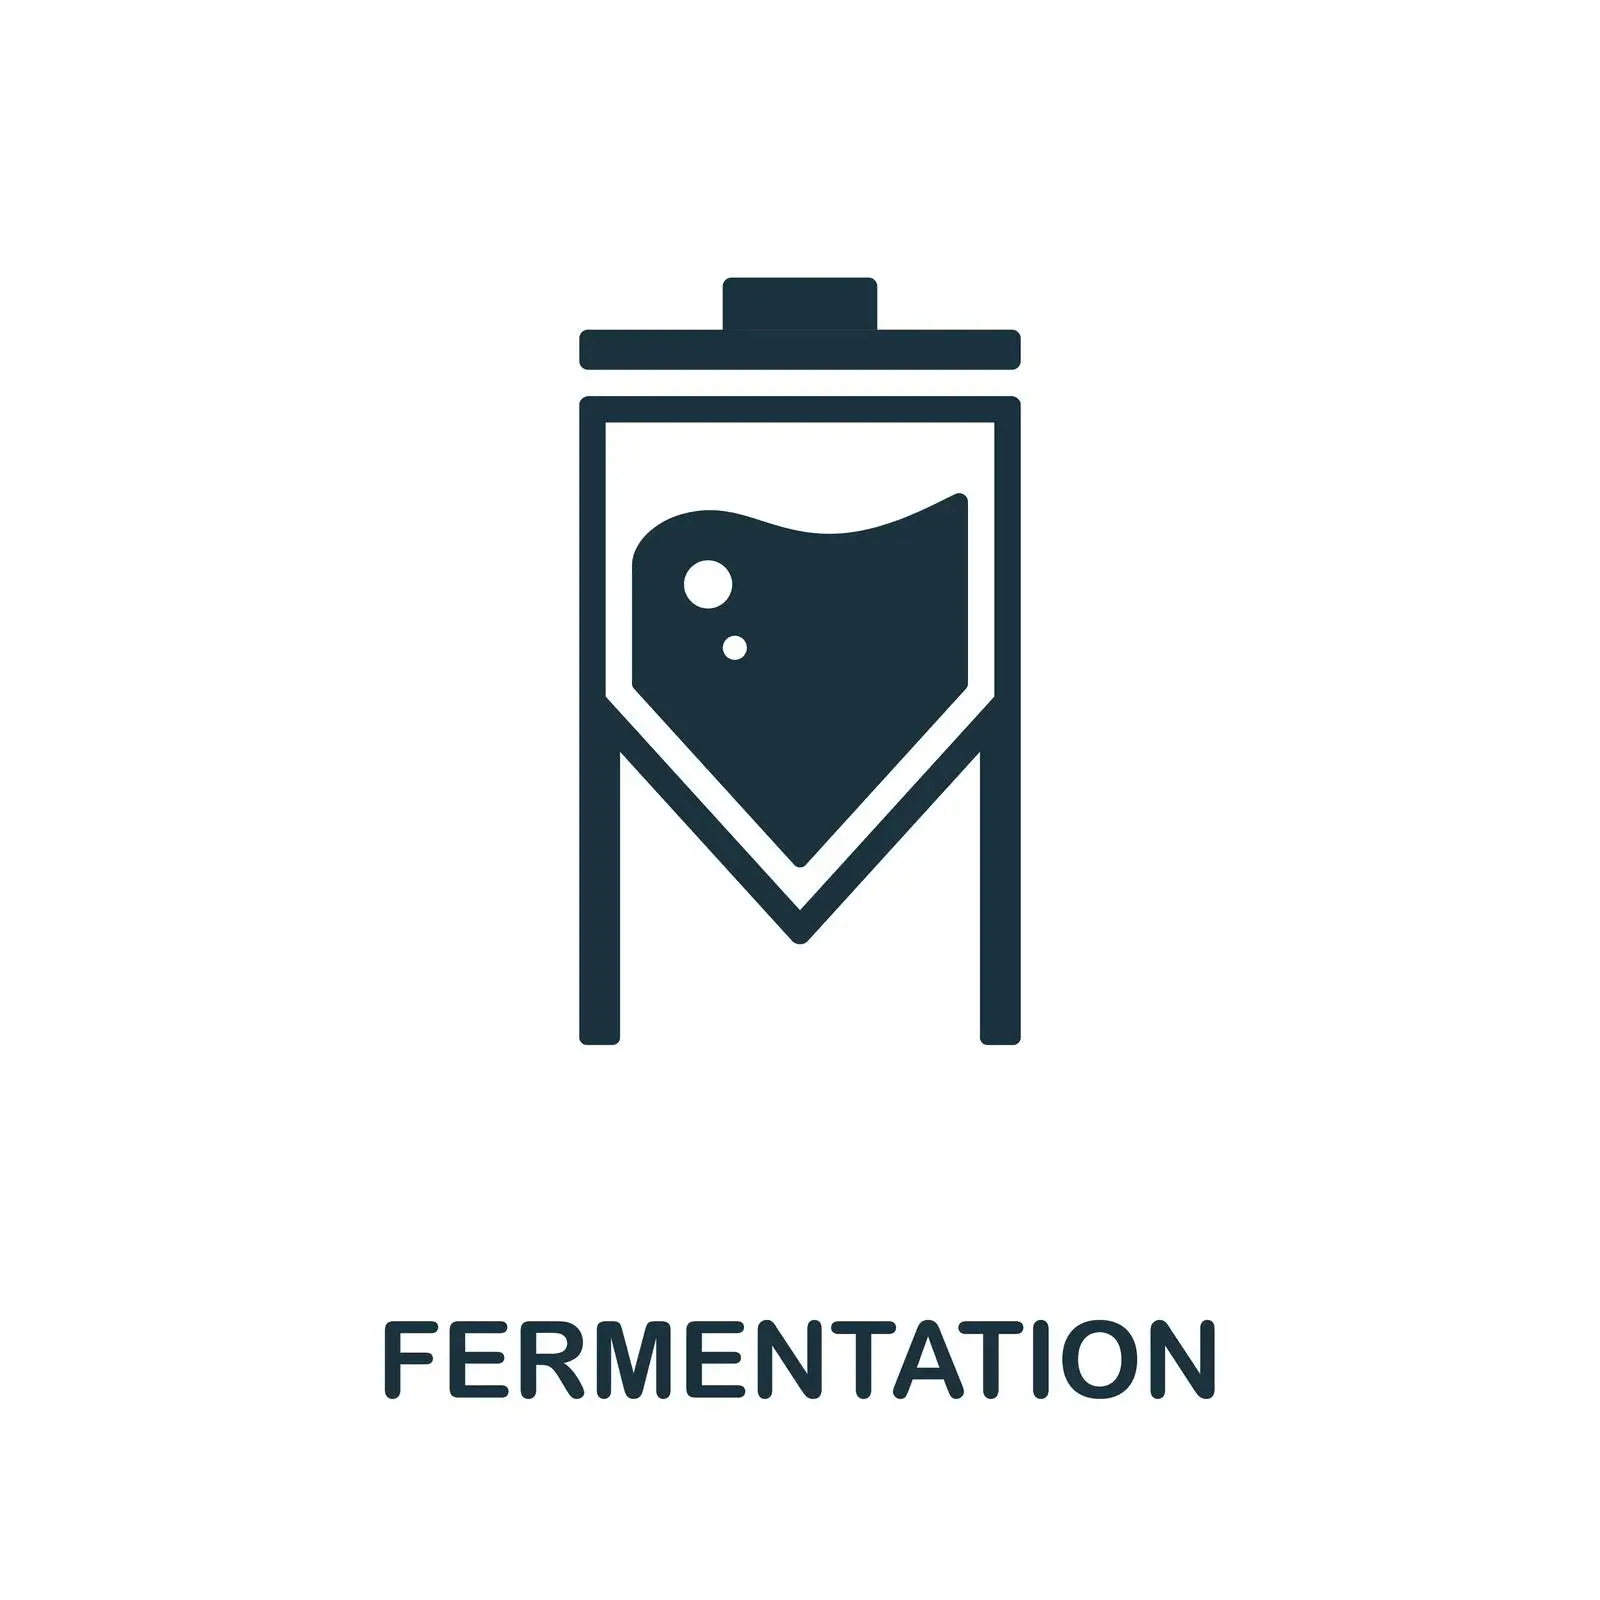 Ferment, Fermentation, Ferment icon